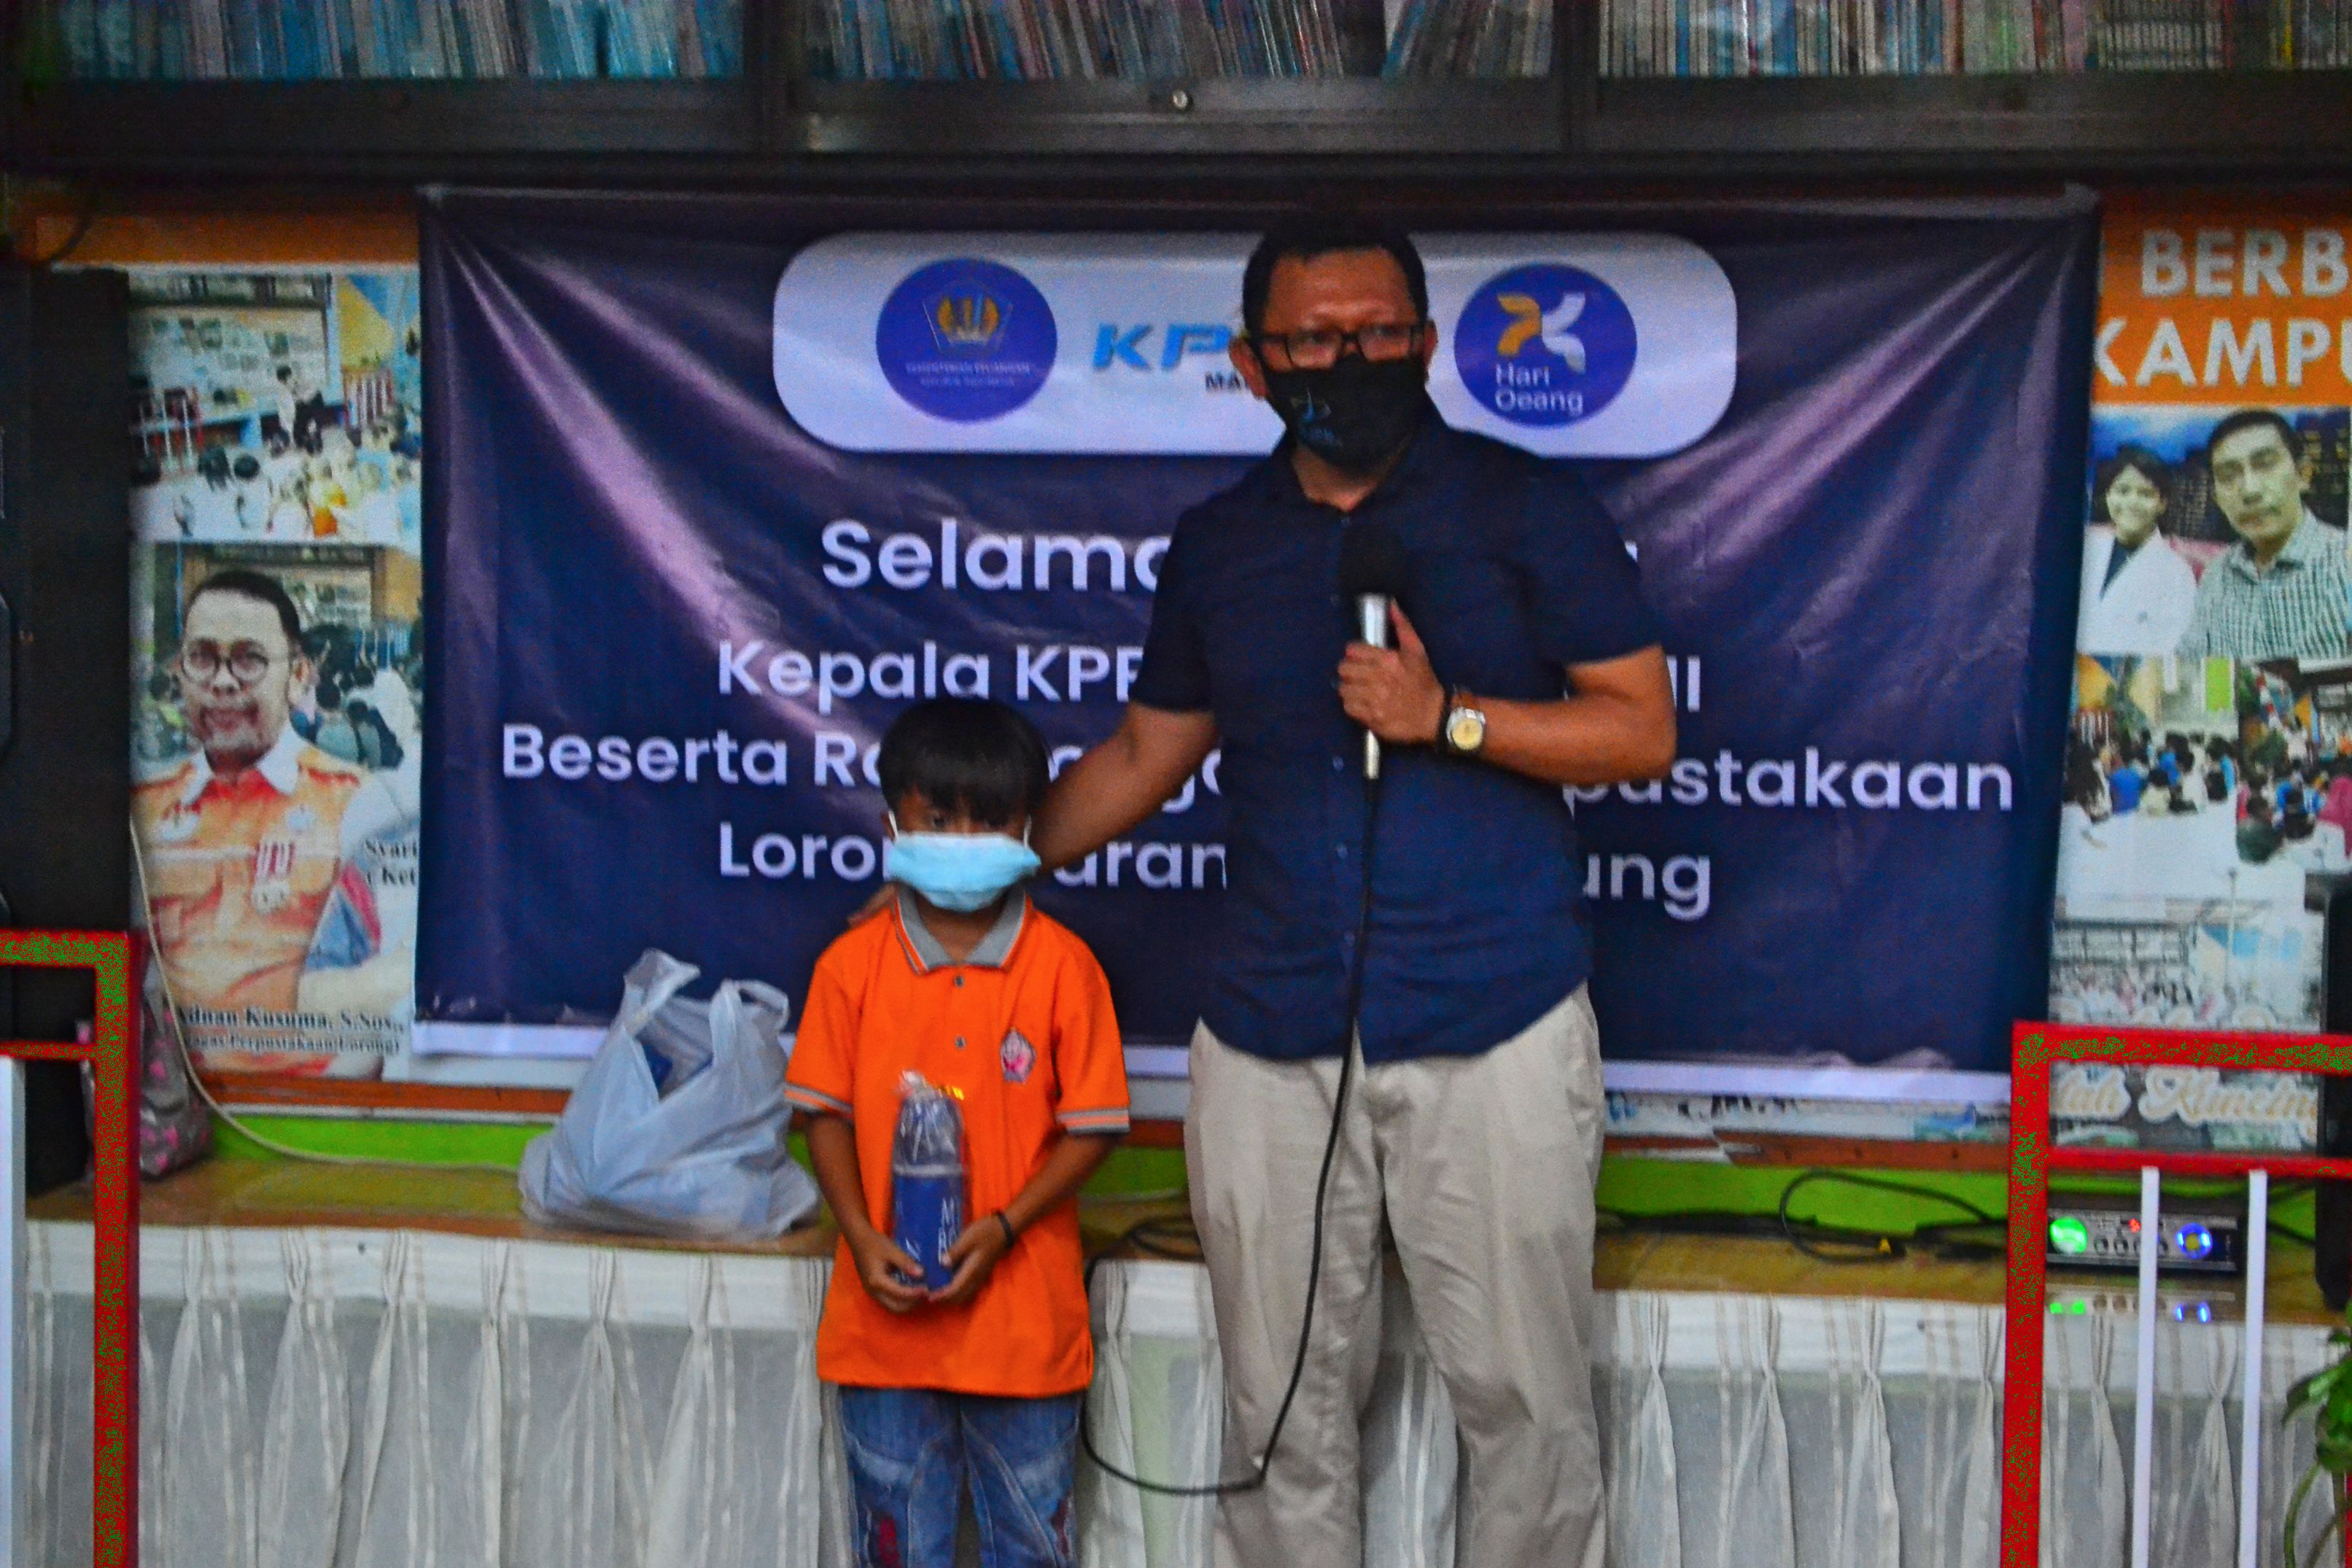 KPPN Makassar II Peringati Hari Oeang Bersama K-Apel